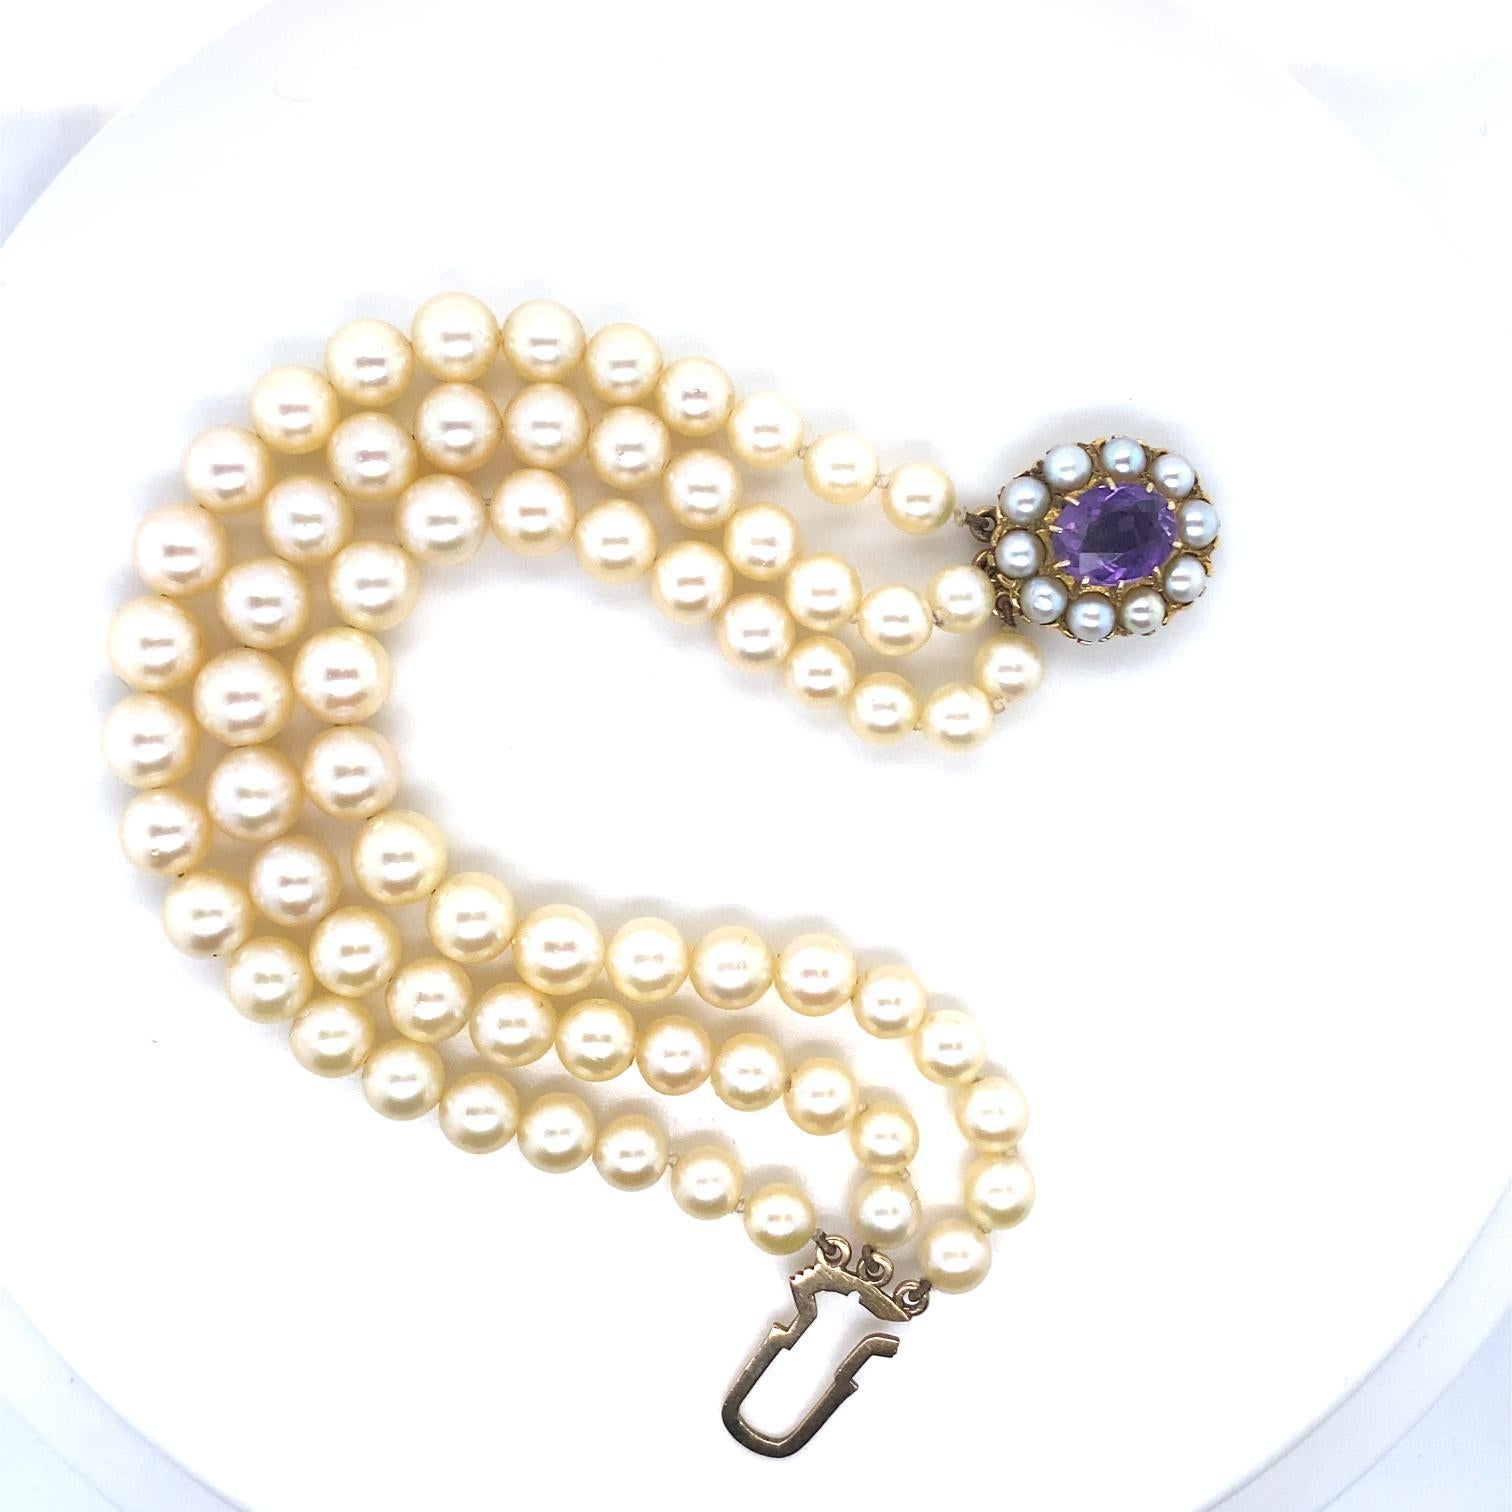 Ein Vintage-Armband mit 3 Reihen Perlen und Amethysten aus 9 Karat Gelbgold. CIRCA 1960

Das elegante dreireihige Armband besteht aus doppelt geknoteten Zuchtperlen, die in der Größe von ca. 5,5 mm bis 8 mm abgestuft sind.

Abgeschlossen mit einer